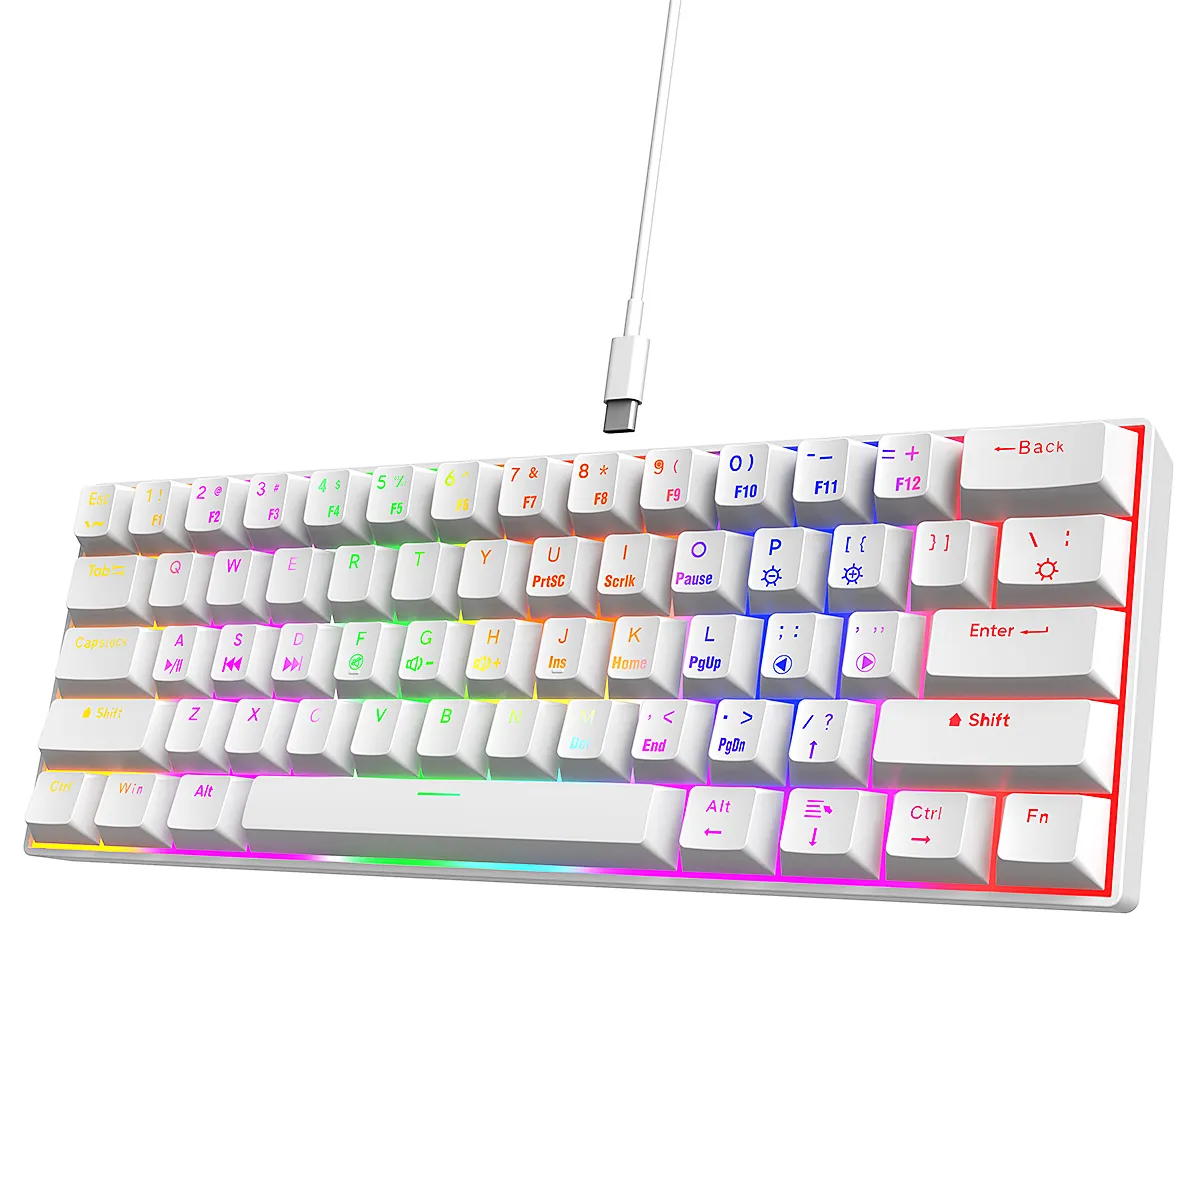 COUSO benutzerdefinierte farbige Keycaps 60 % verdrahtet RGB Gaming Tastatur benutzerdefinierte Téclado Gamer 61 Tasten kompakte kabellose mechanische Tastatur